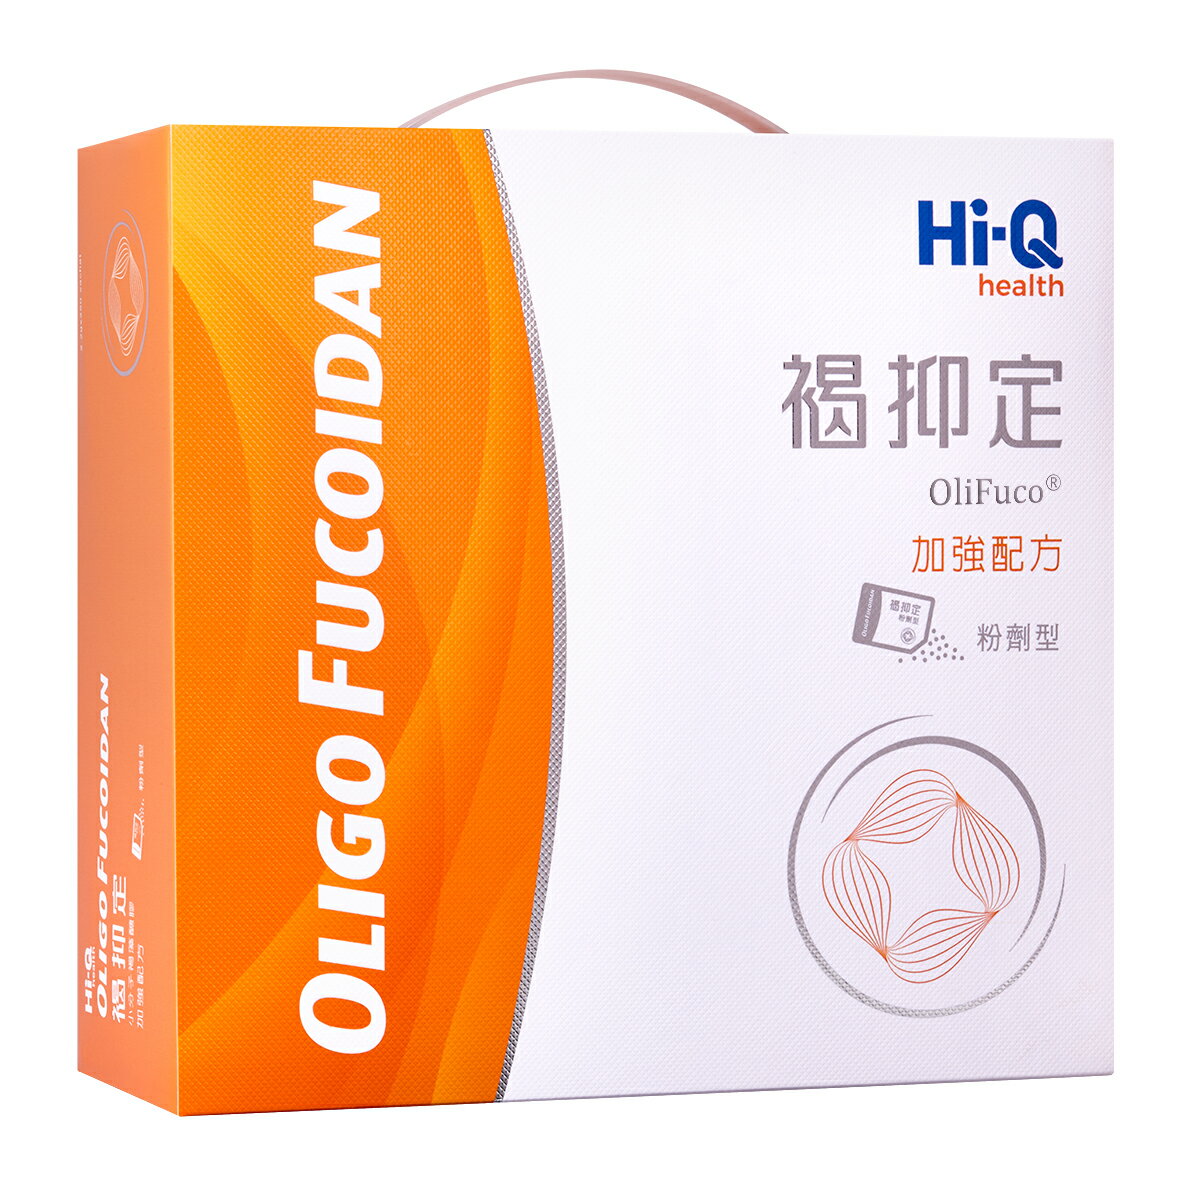 Hi-Q 中華海洋生技 褐抑定 加強配方粉劑型 250包 禮盒 原廠公司貨(私訊享優惠)